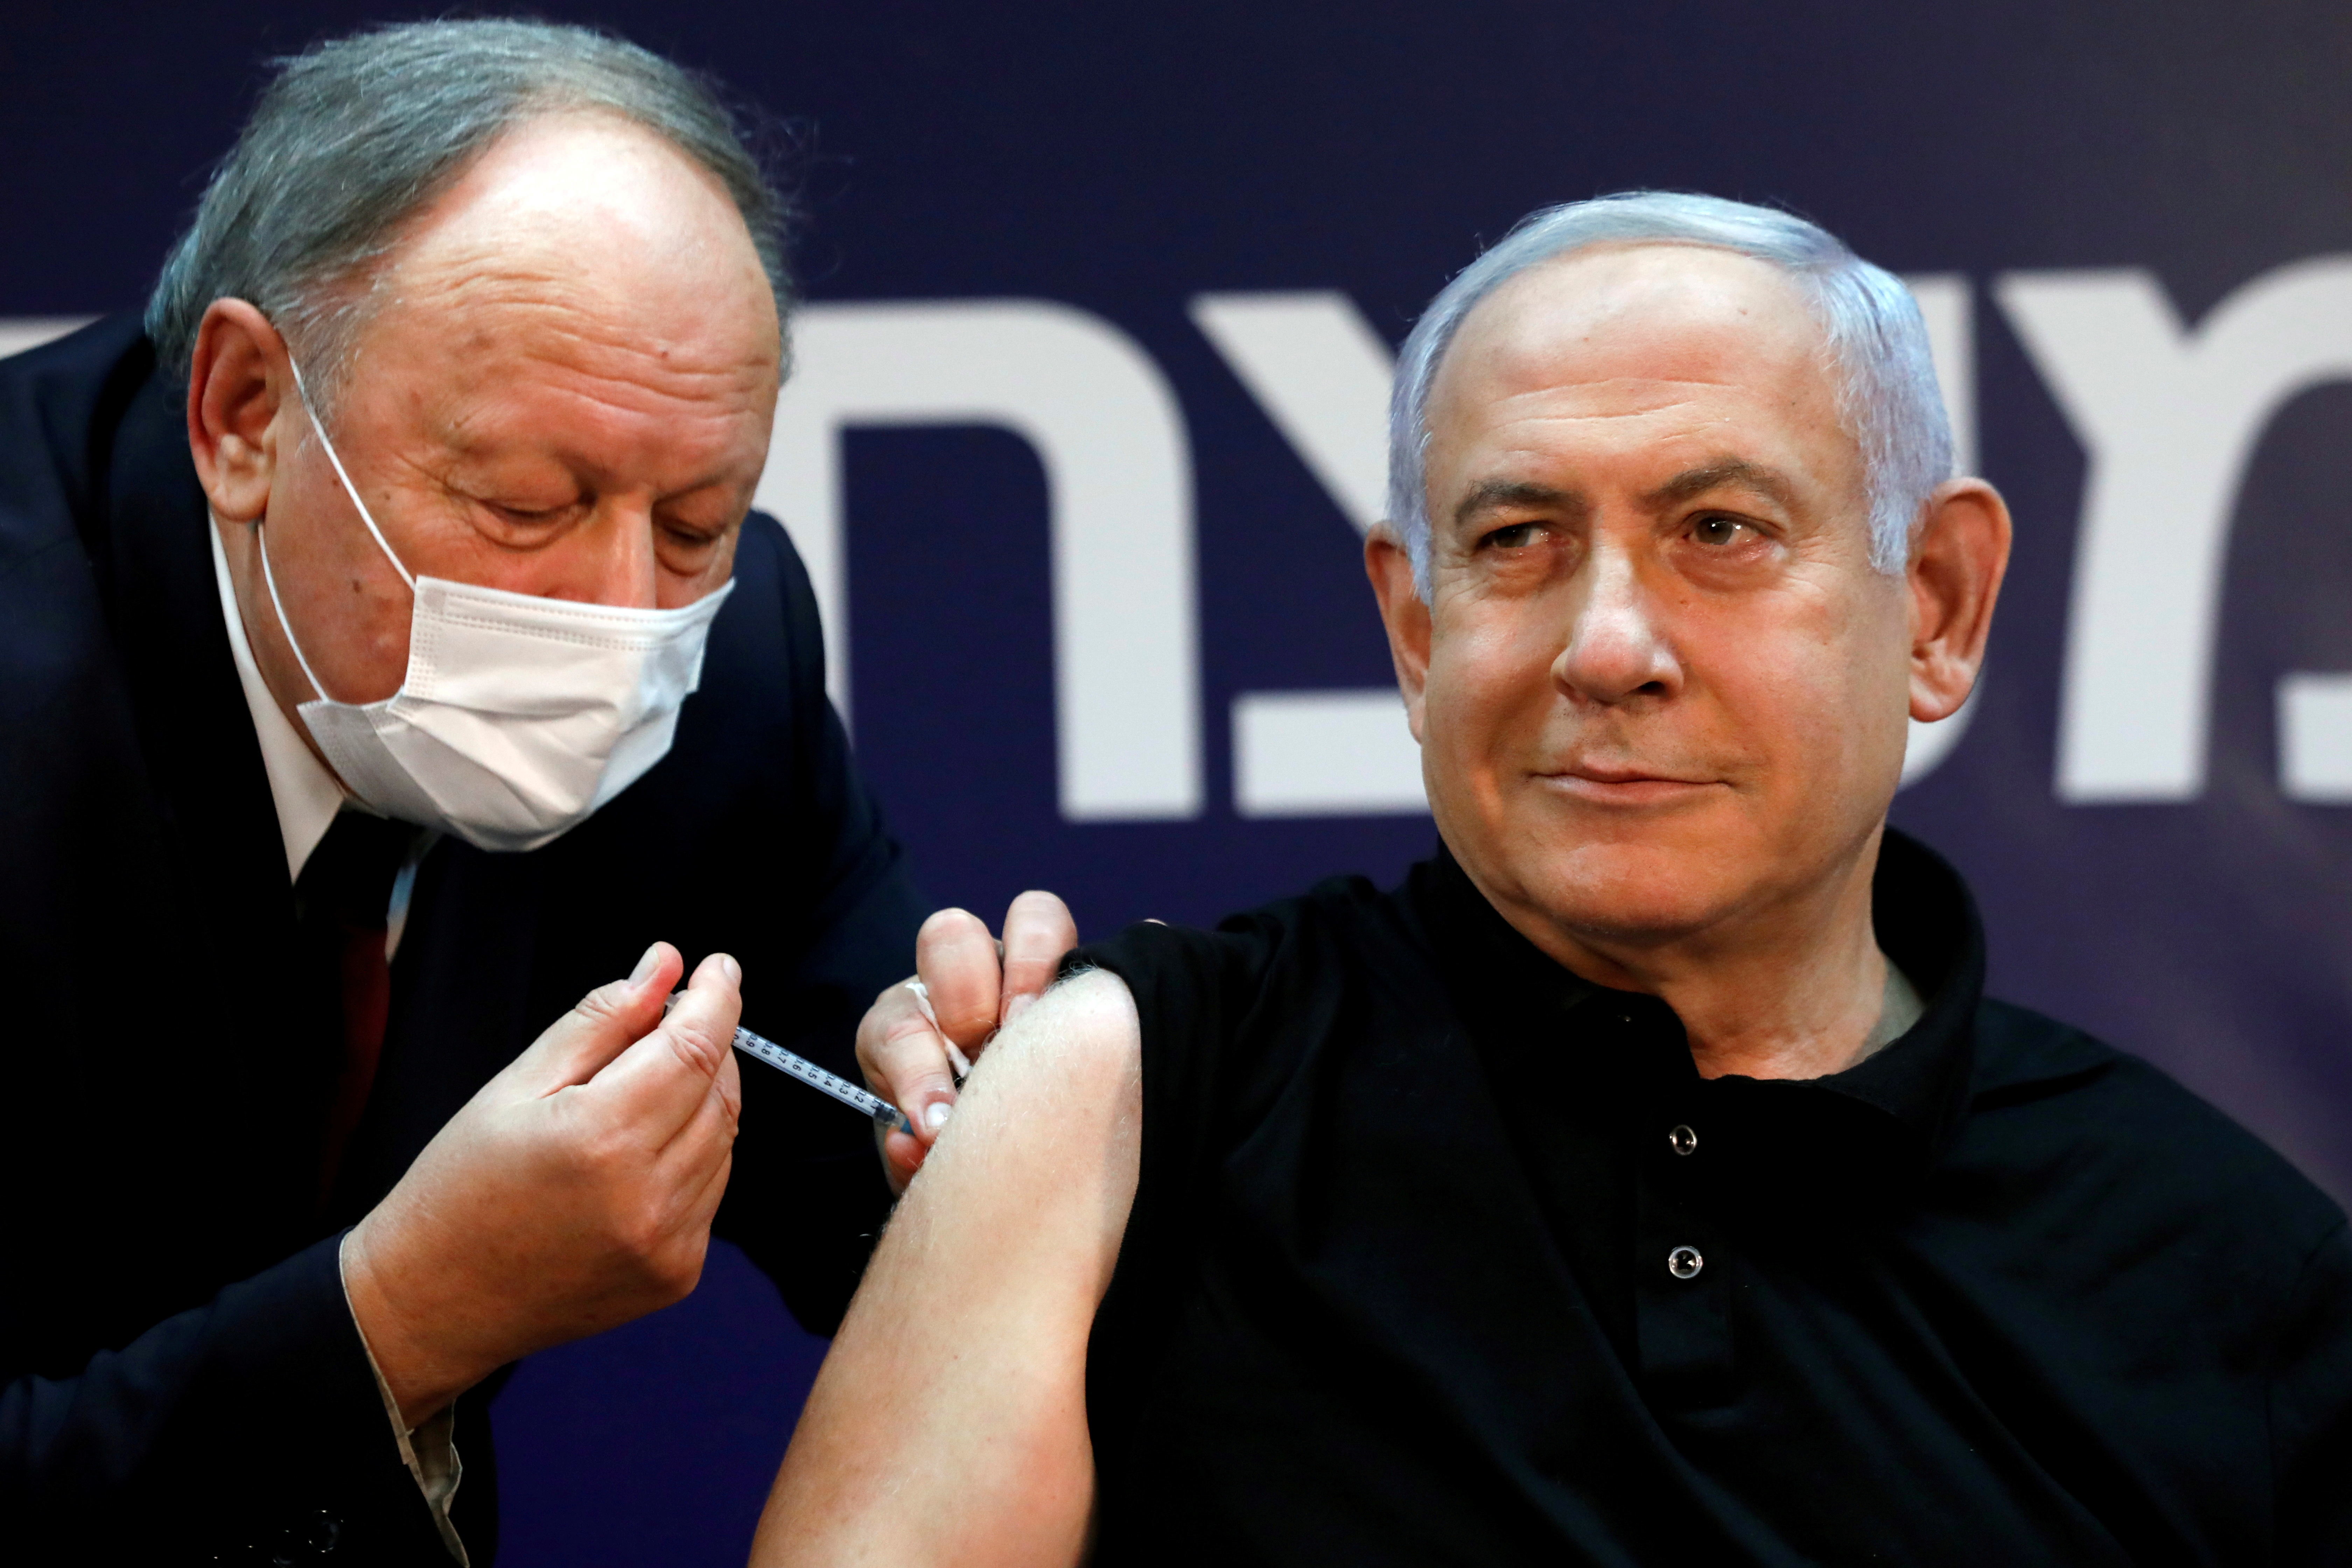 El primer ministro israelí, Benjamin Netanyahu, recibe la vacuna contra el COVID-19 (REUTERS/Amir Cohen/Pool/File Photo)